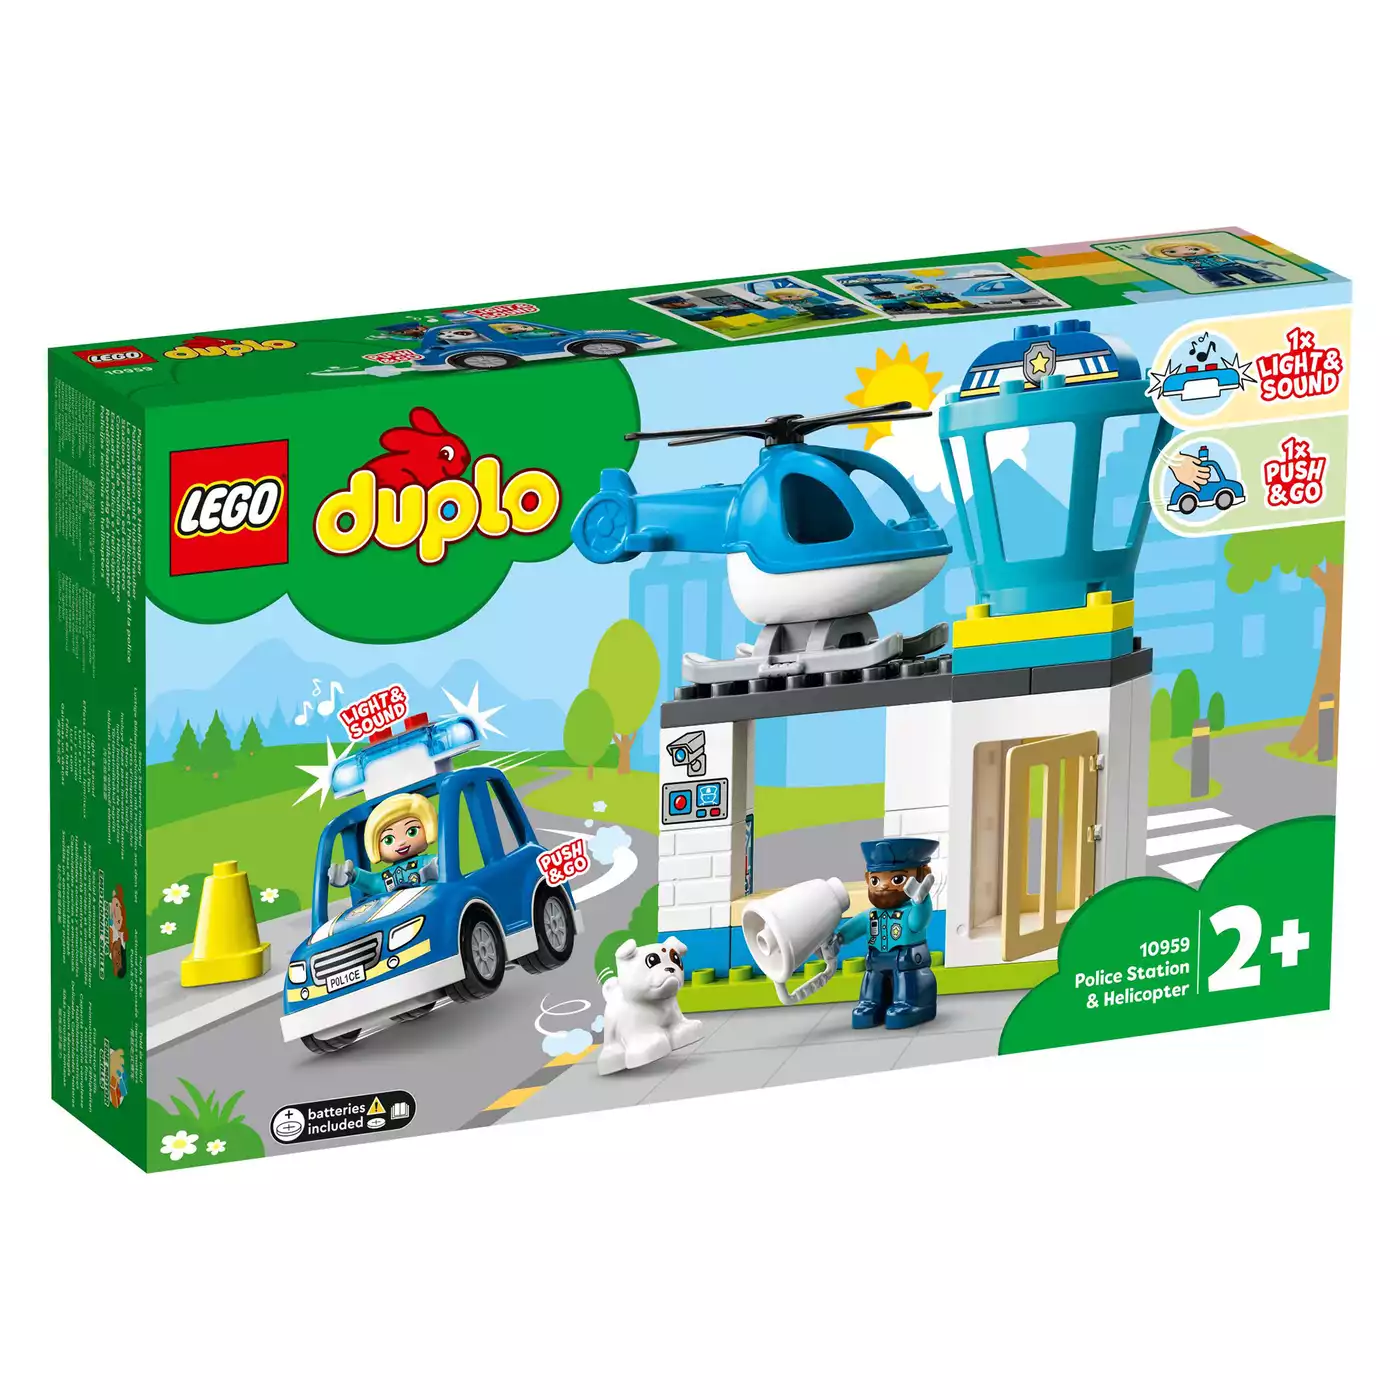 10959 Polizeistation mit Hubschrauber LEGO duplo 2000582874301 5